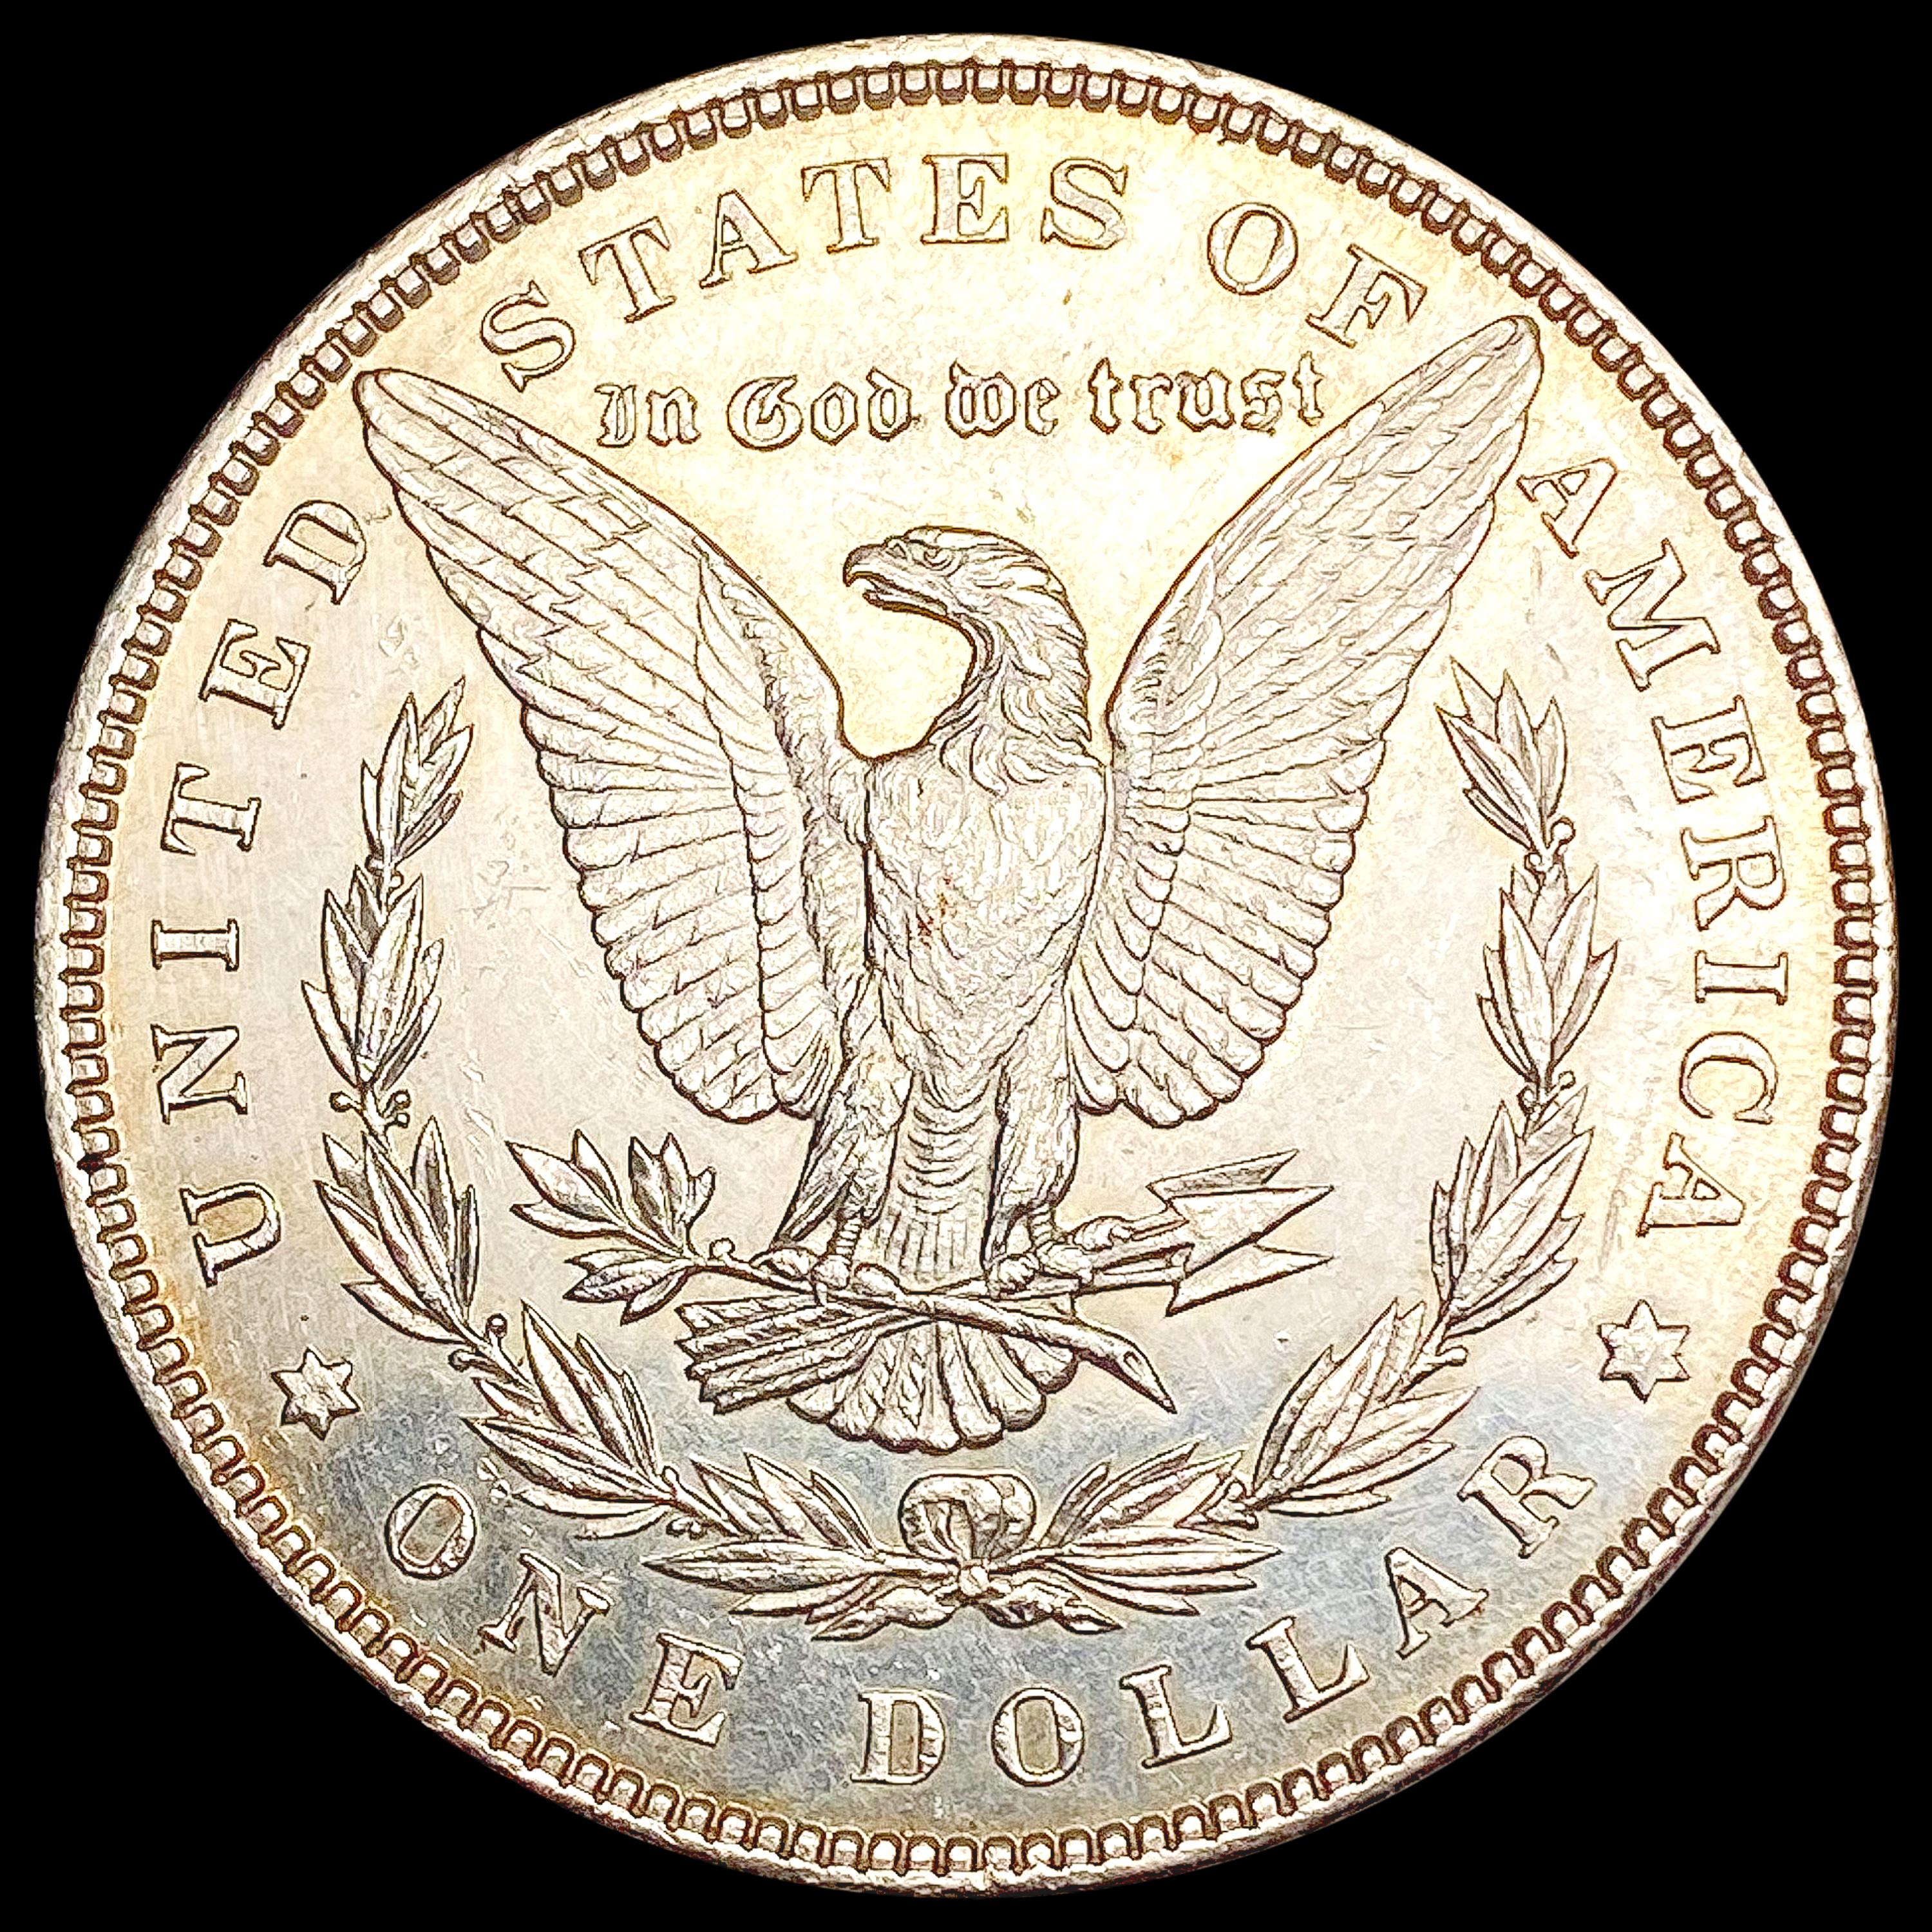 1896 Morgan Silver Dollar CHOICE AU